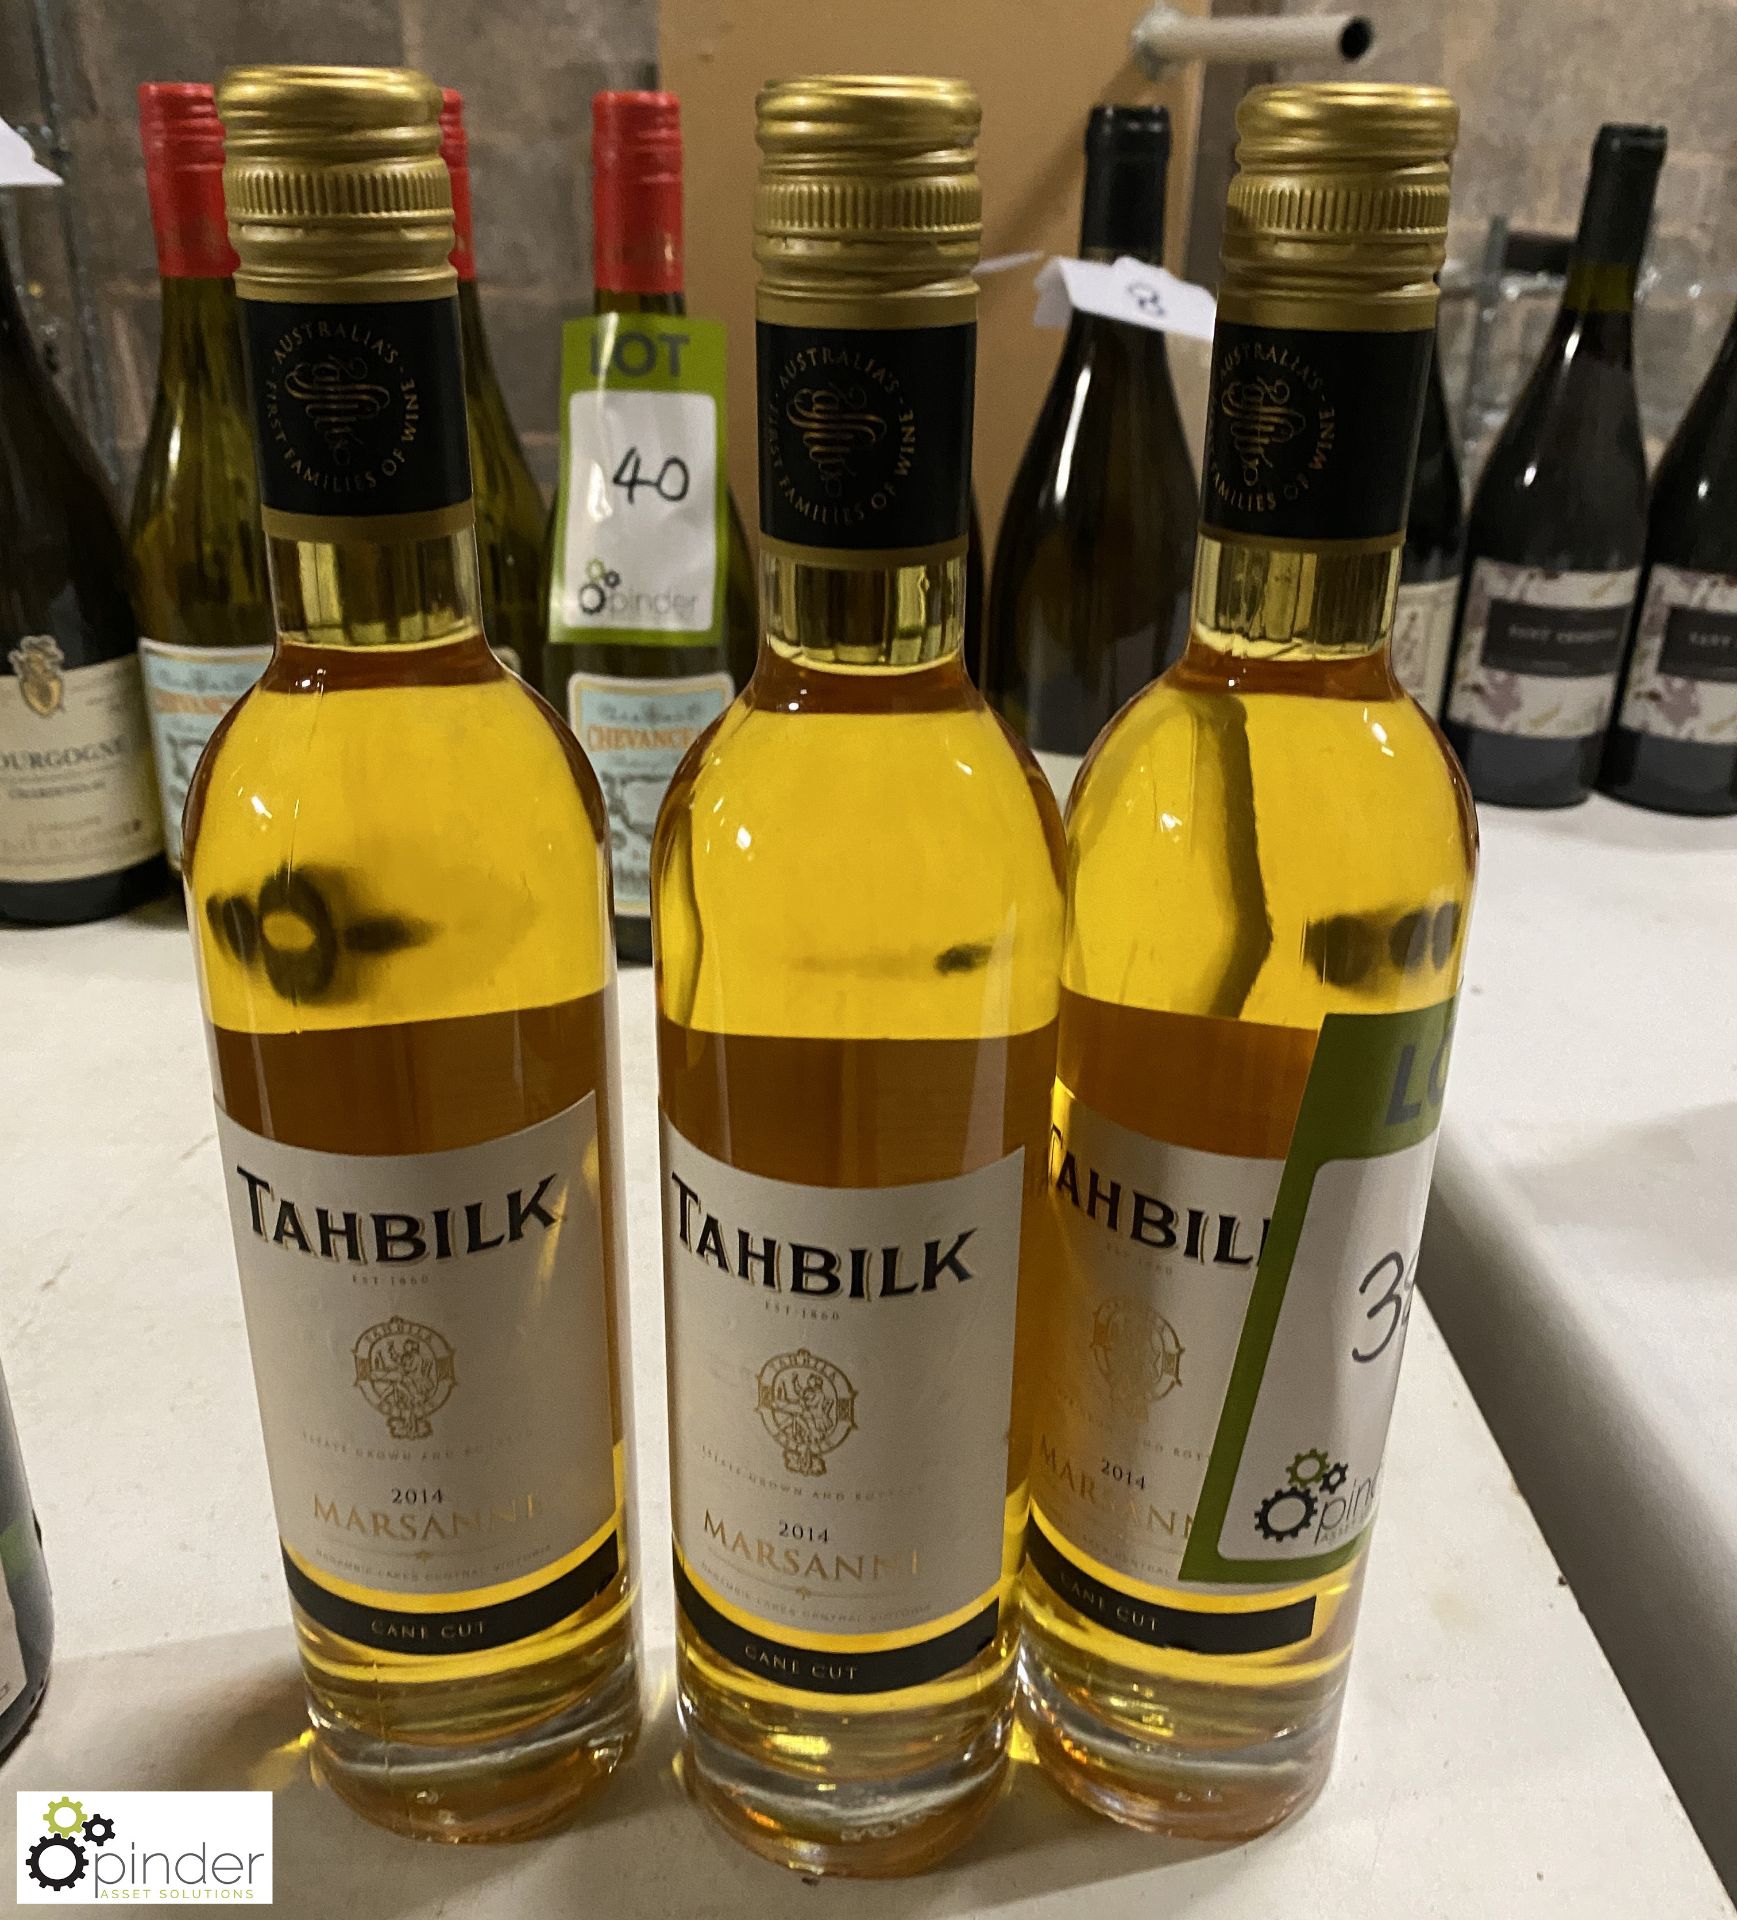 3 bottles Tahblik Marsonne (2014) 500ml (LOCATION: Devon)